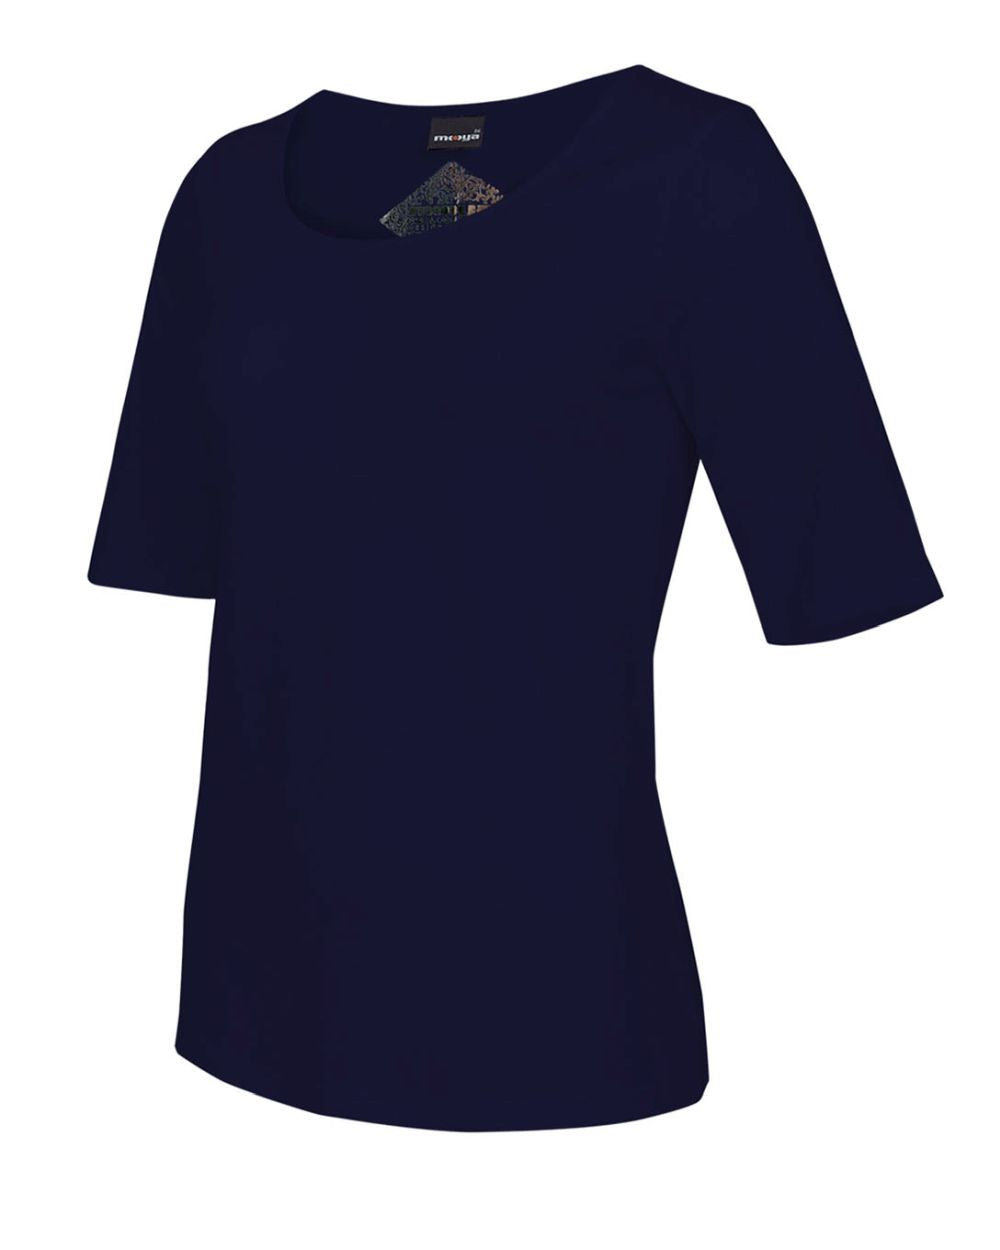 Damen-Viskose-Shirt Beatriz, 1/2-Arm, Farbe Marine Blau